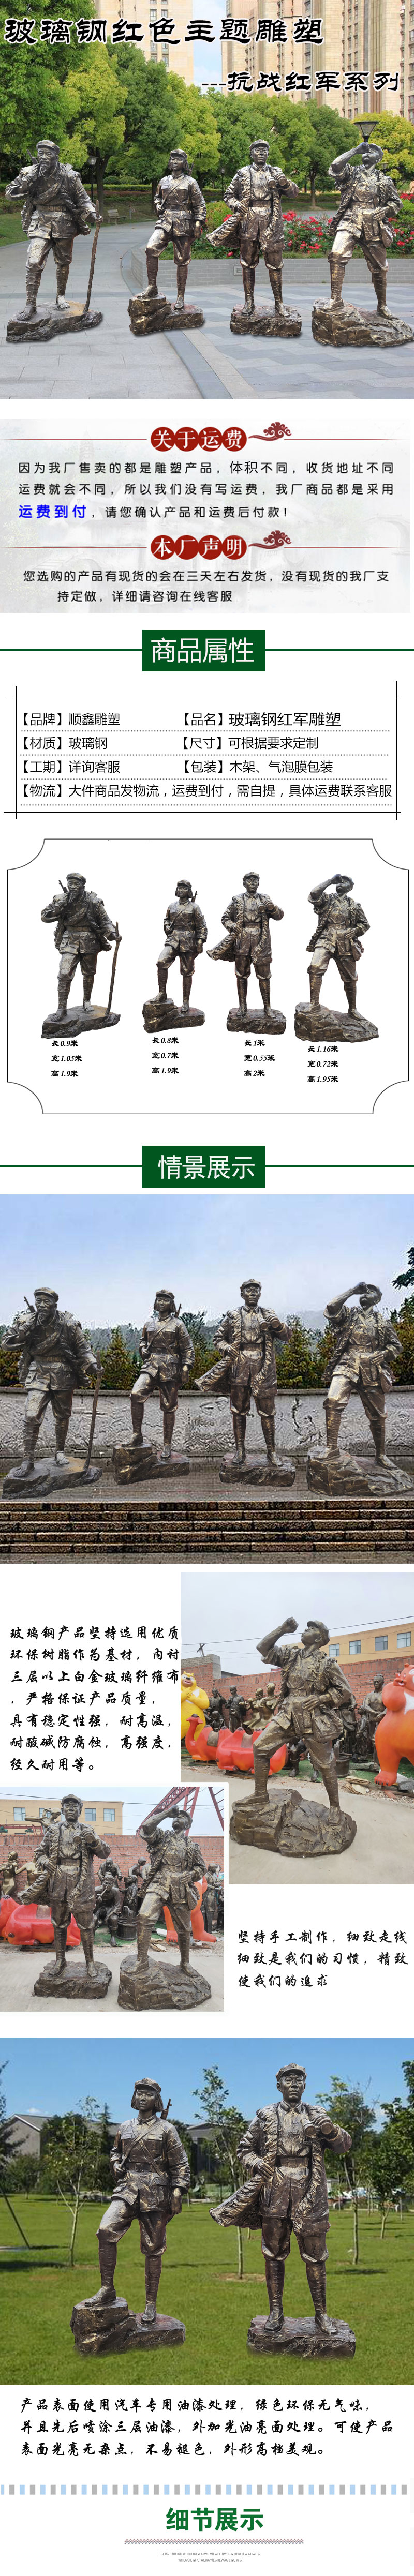 玻璃钢红色部队文化主题雕塑革命战士八路军雕塑城市景观雕塑